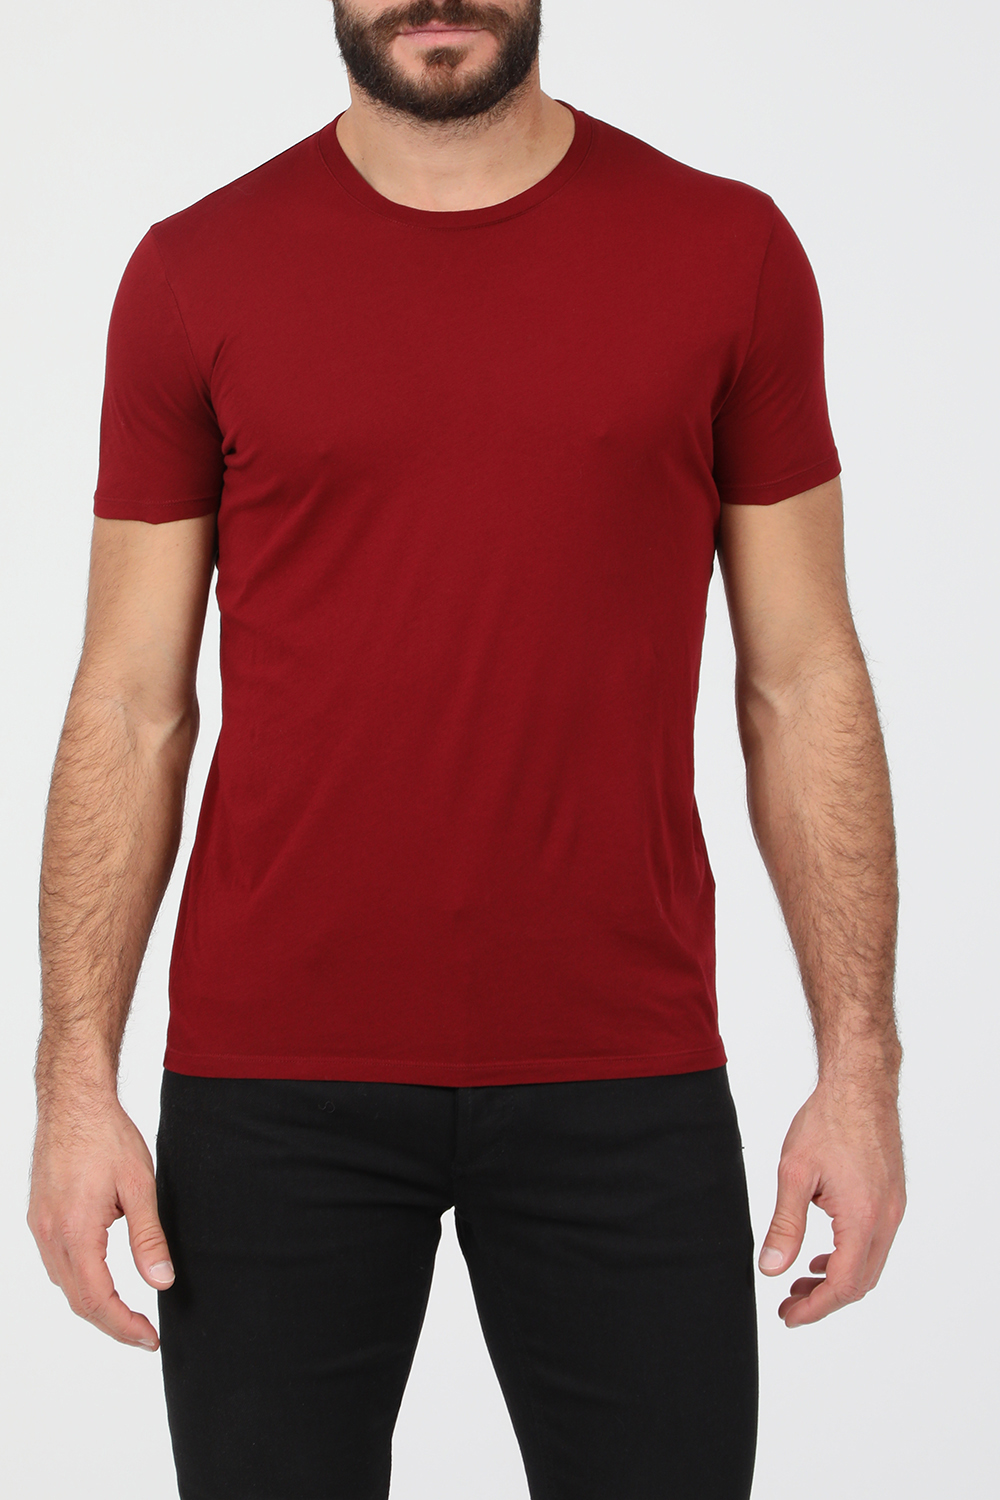 AMERICAN VINTAGE – Ανδρικο t-shirt AMERICAN VINTAGE μπορντο